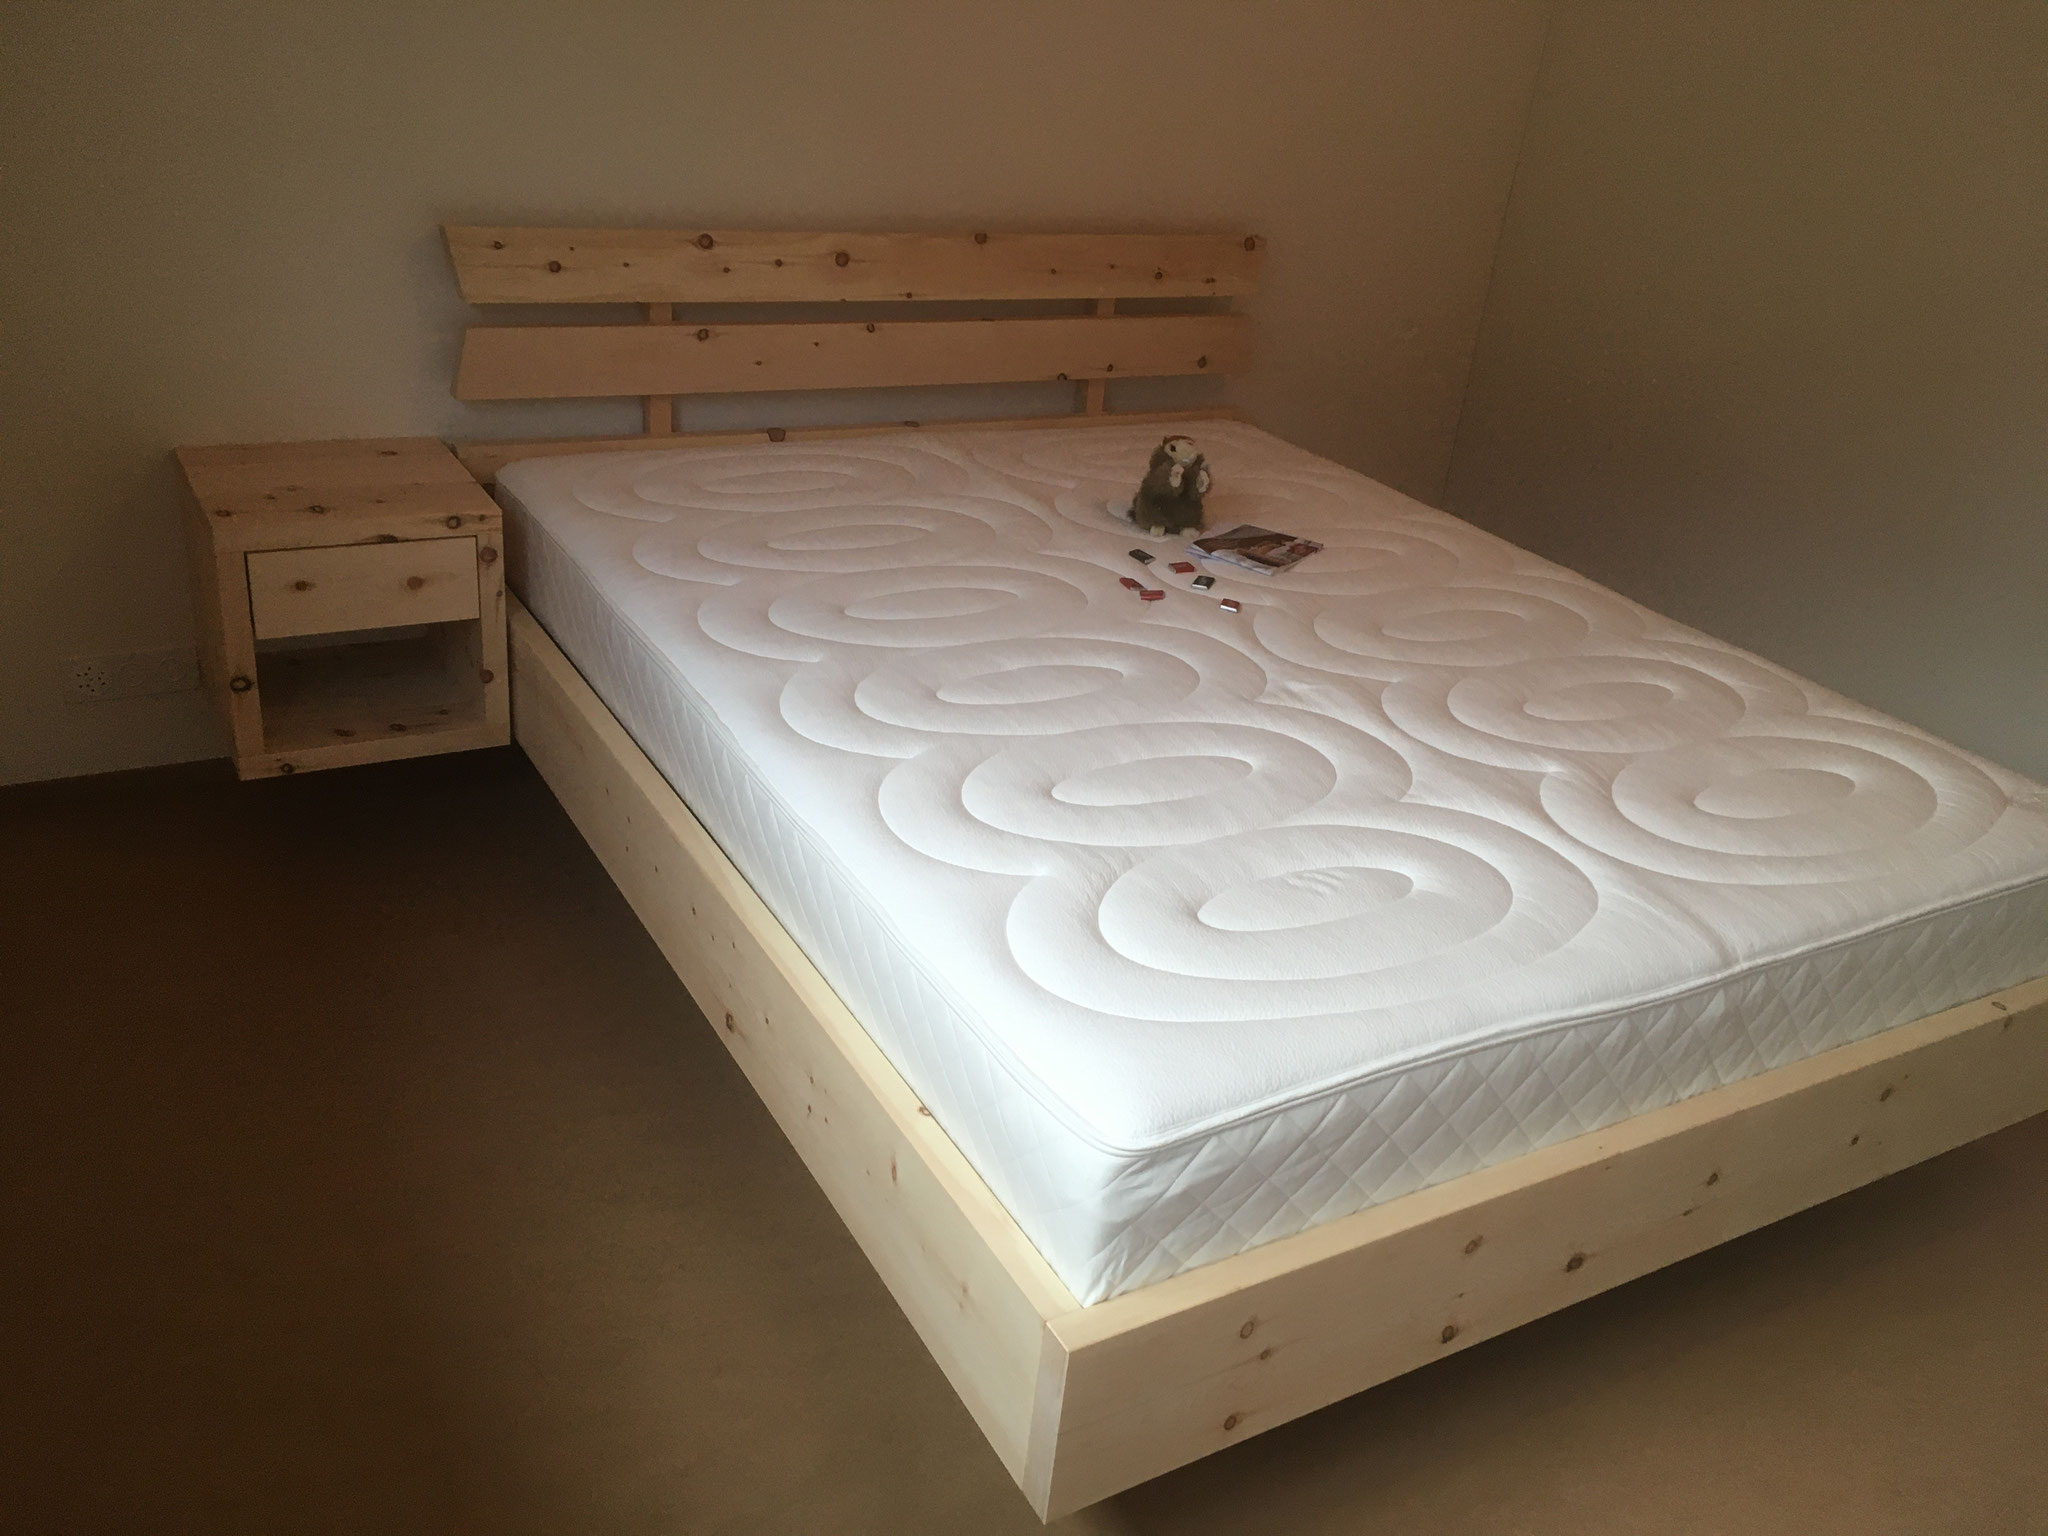 Arven Bett mit passendem Nachttischli und dem kompakten Designa Bettinhalt von #hüslernestlungern